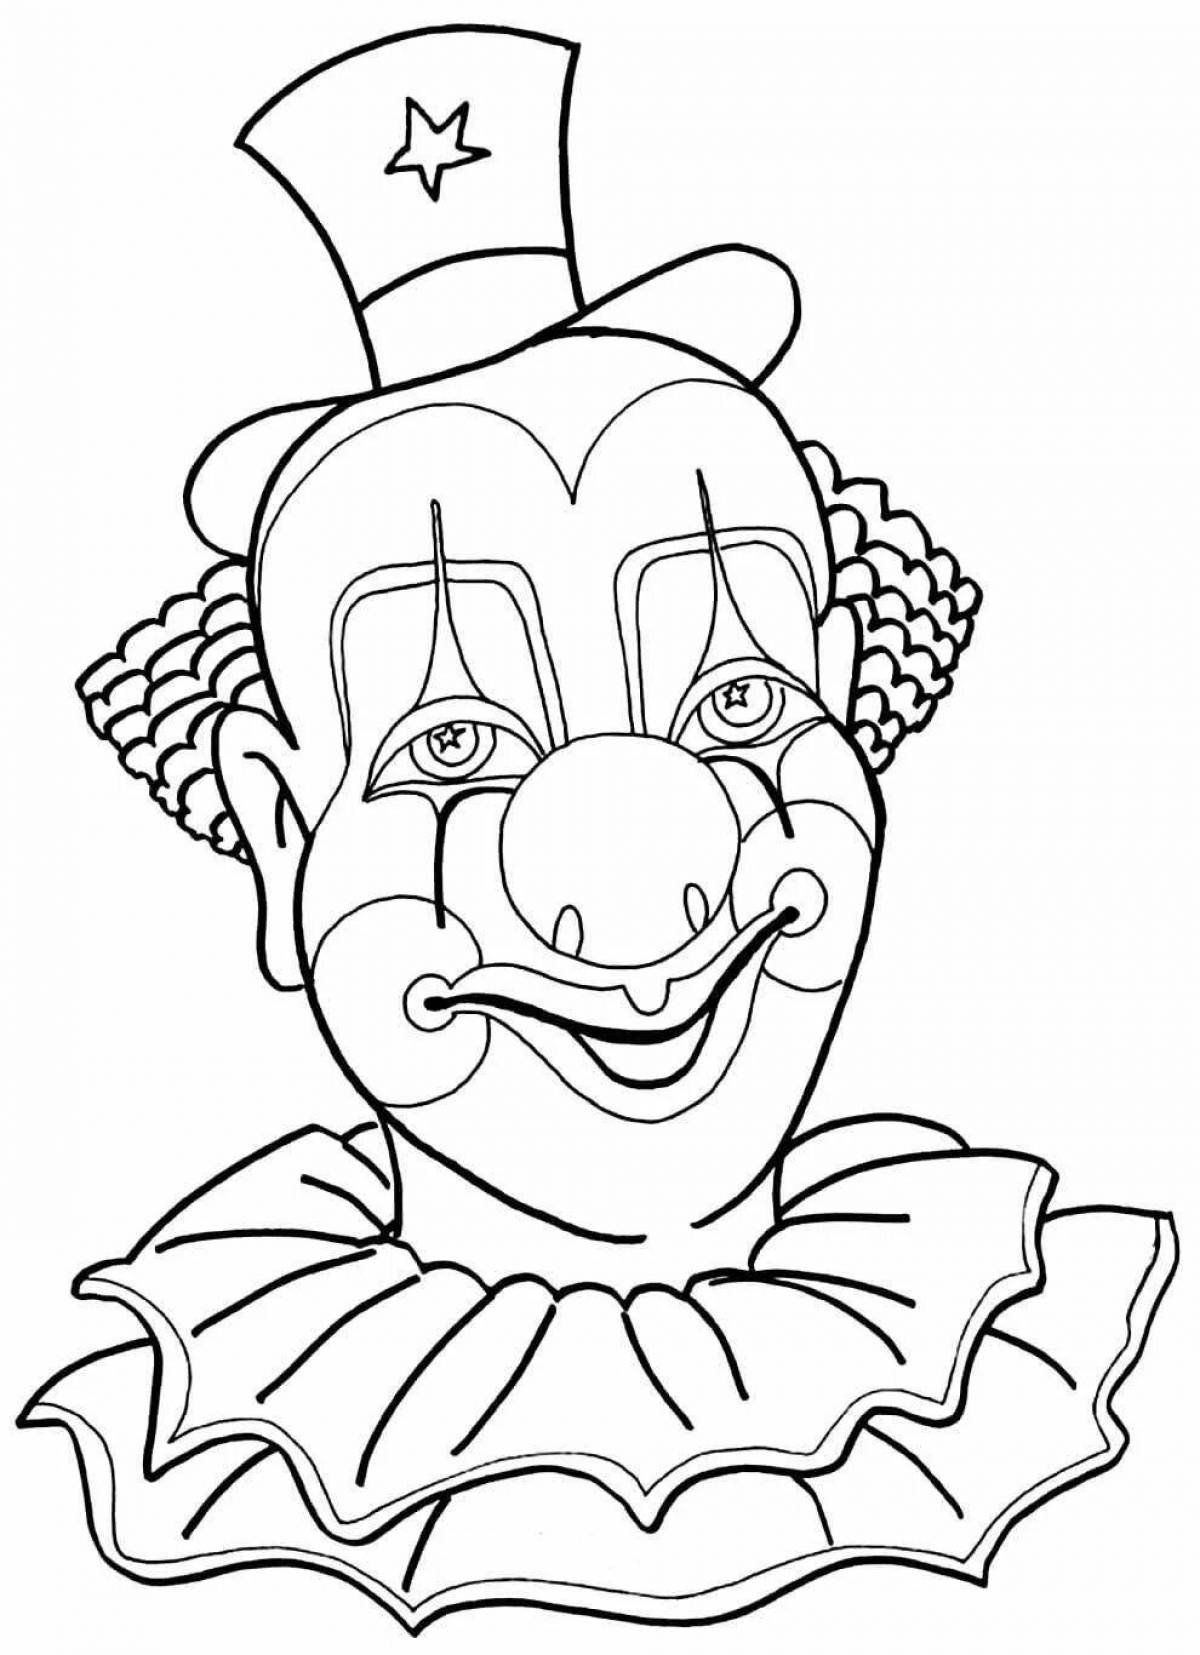 Лицо клоуна раскраска распечатать. Клоун раскраска. Клоун раскраска для детей. Клоун рисунок. Лицо клоуна раскраска.